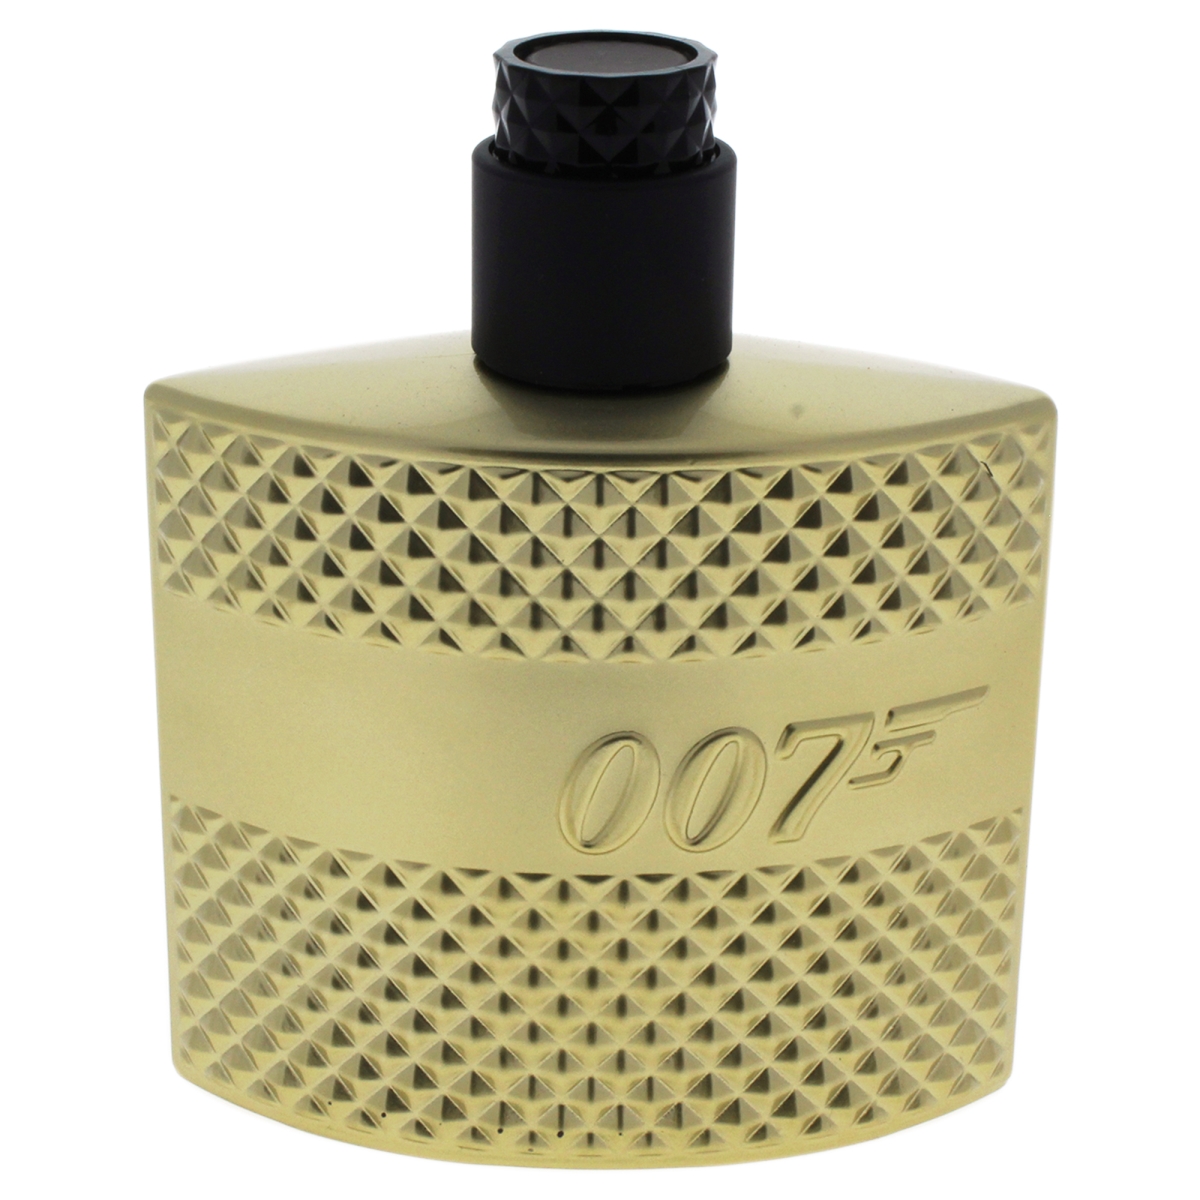 M-t-2151 2.5 Oz 007 Edt Spray For Men